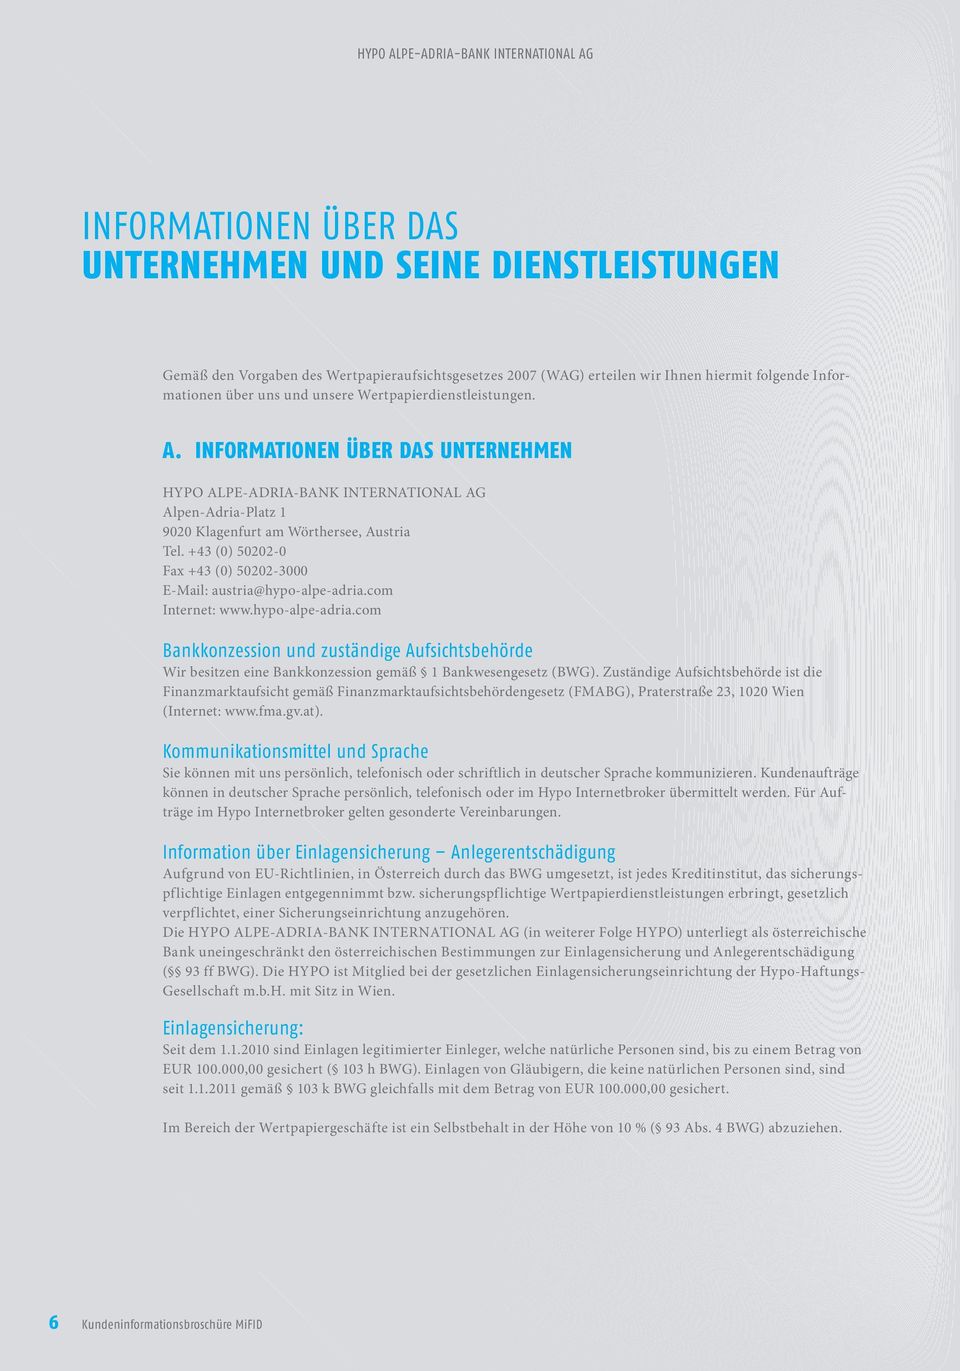 +43 (0) 50202-0 Fax +43 (0) 50202-3000 E-Mail: austria@hypo-alpe-adria.com Internet: www.hypo-alpe-adria.com Bankkonzession und zuständige Aufsichtsbehörde Wir besitzen eine Bankkonzession gemäß 1 Bankwesengesetz (BWG).